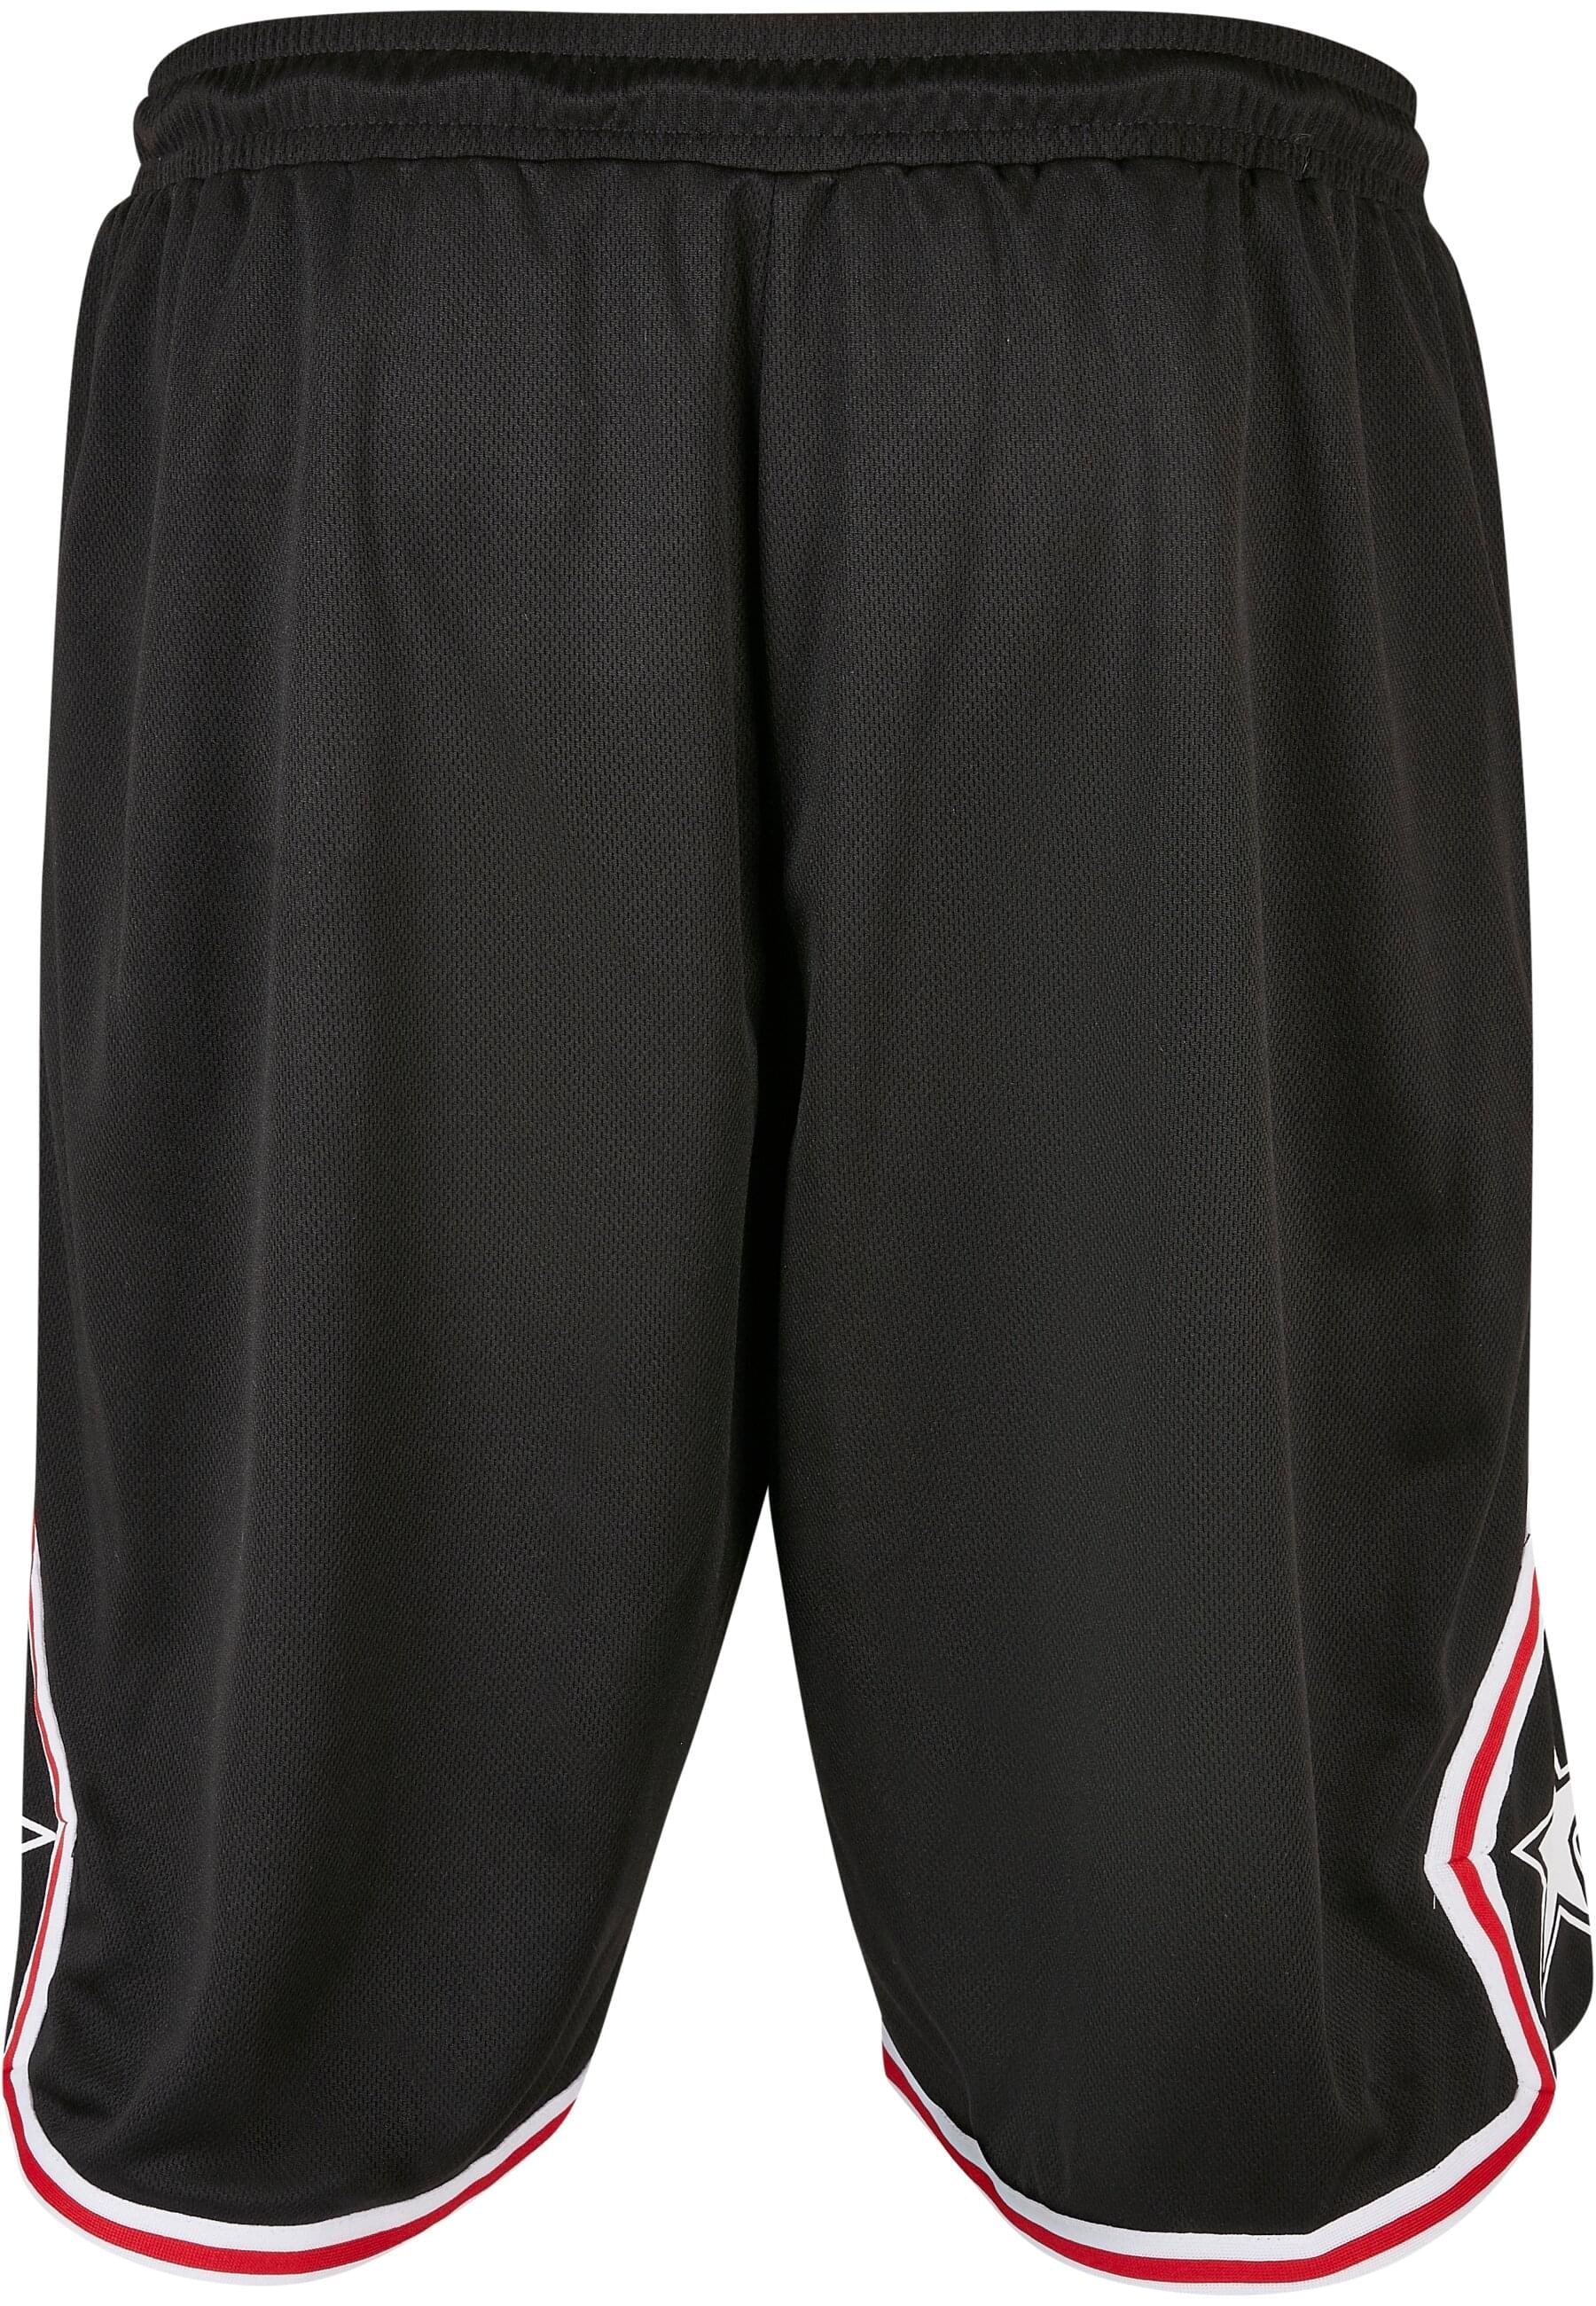 Starter Black Label Stoffhose »Starter Black Label Herren Starter Star Leg Sports Shorts«, (1 tlg.)